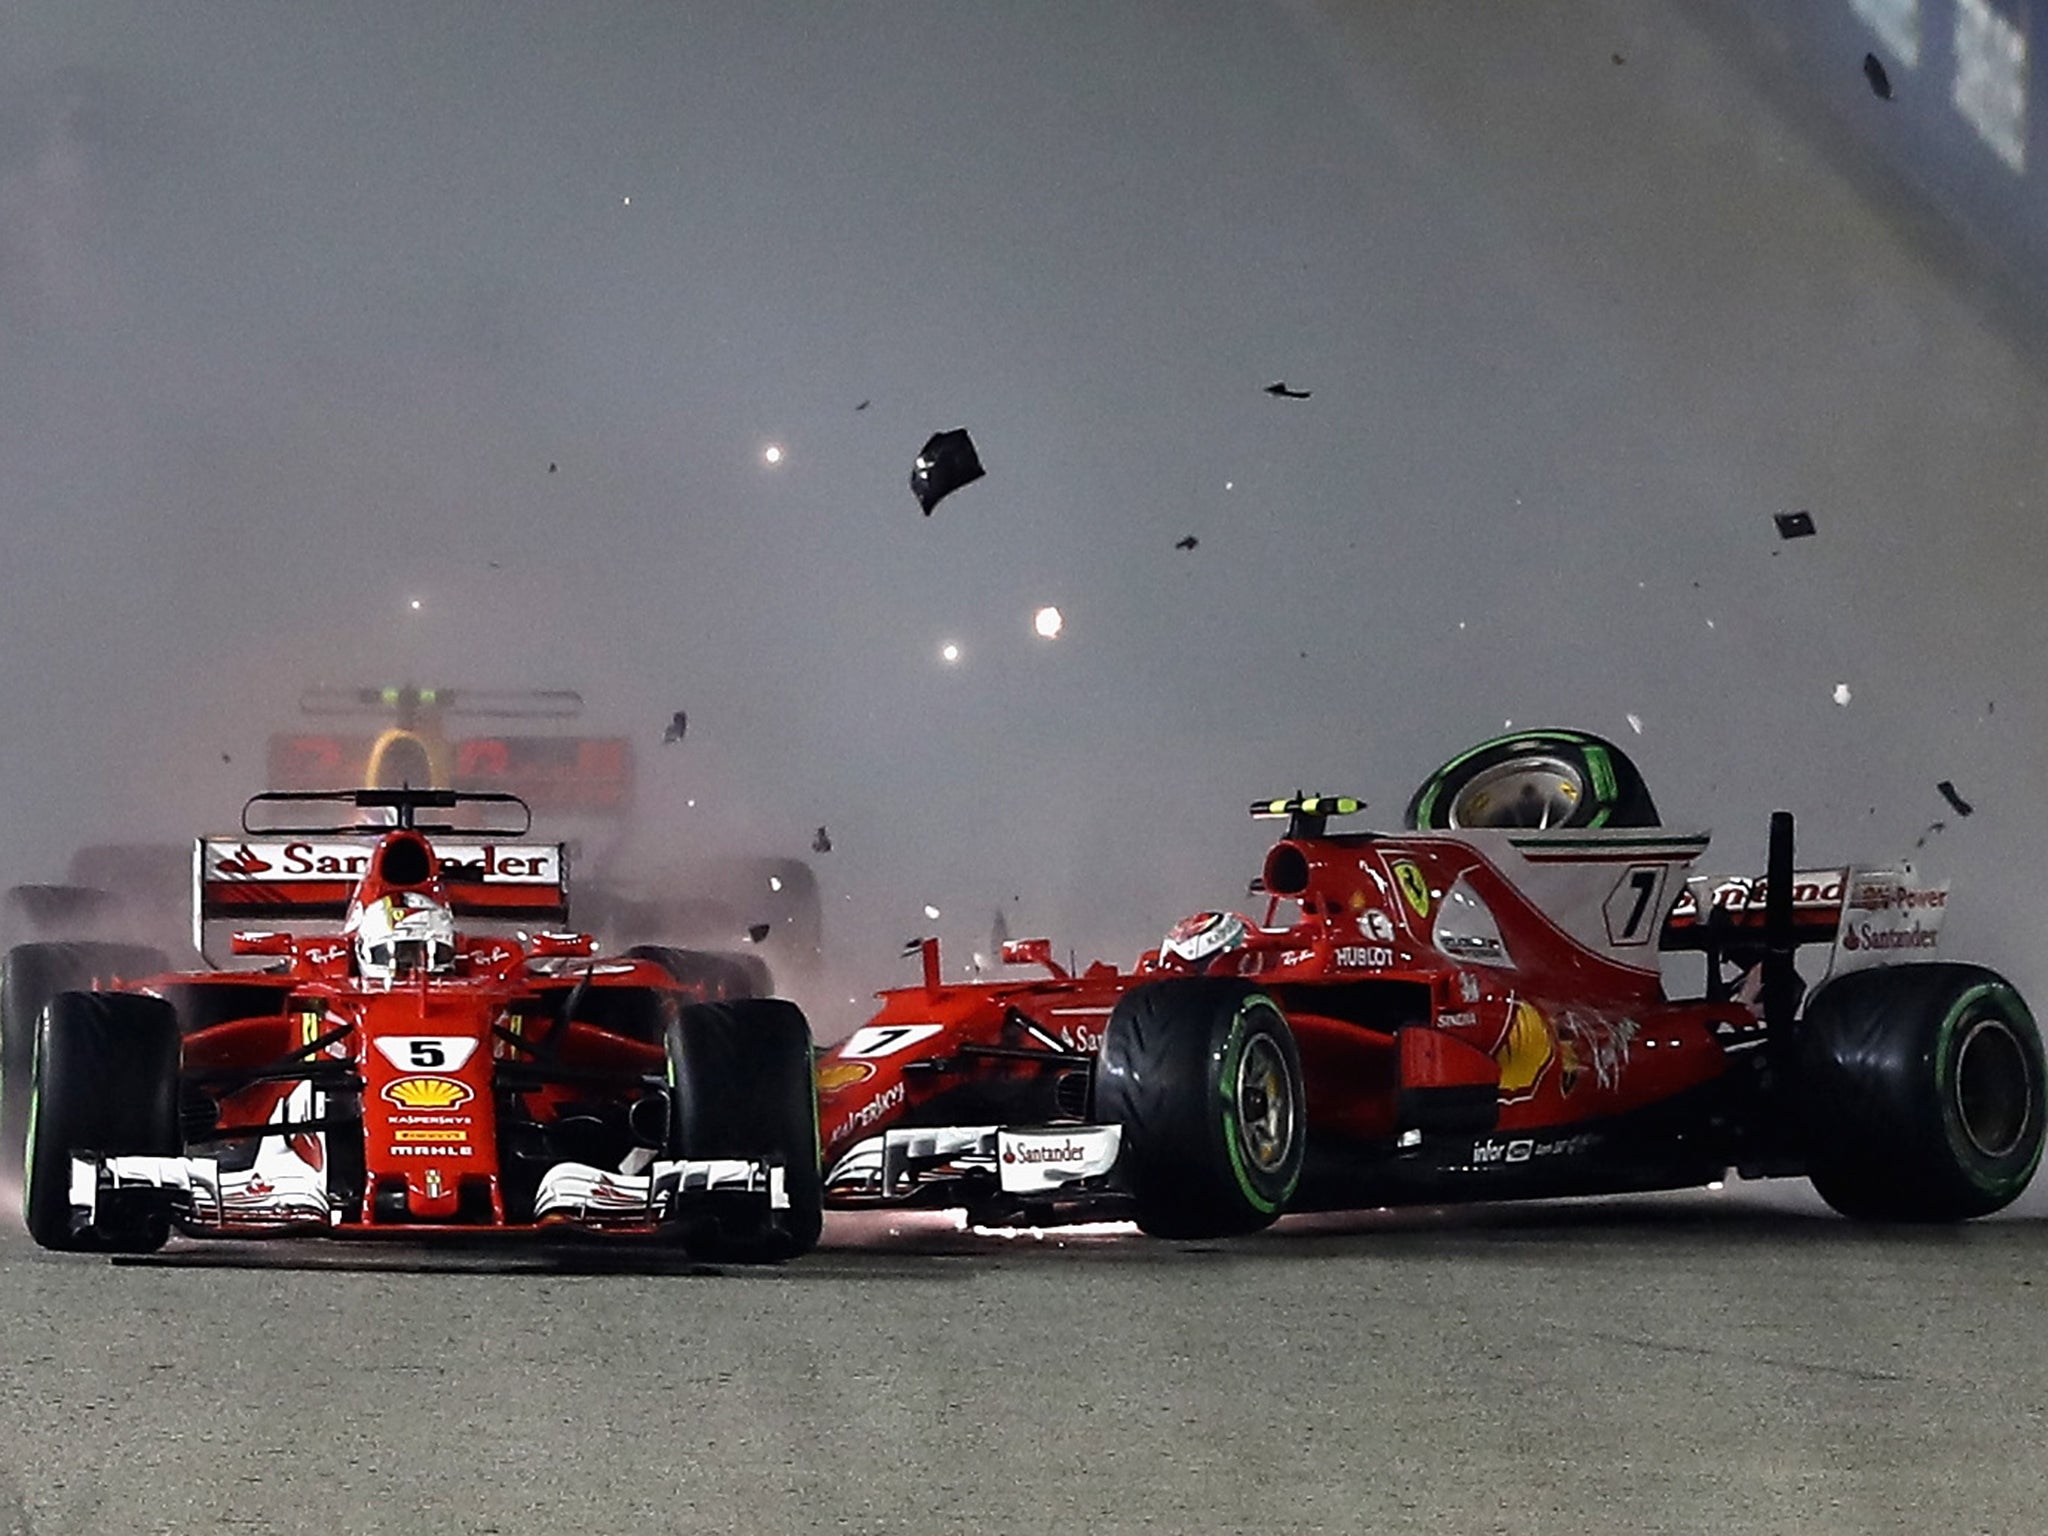 &#13;
Sebastian Vettel, Kimi Raikkonen and Max Verstappen &#13;